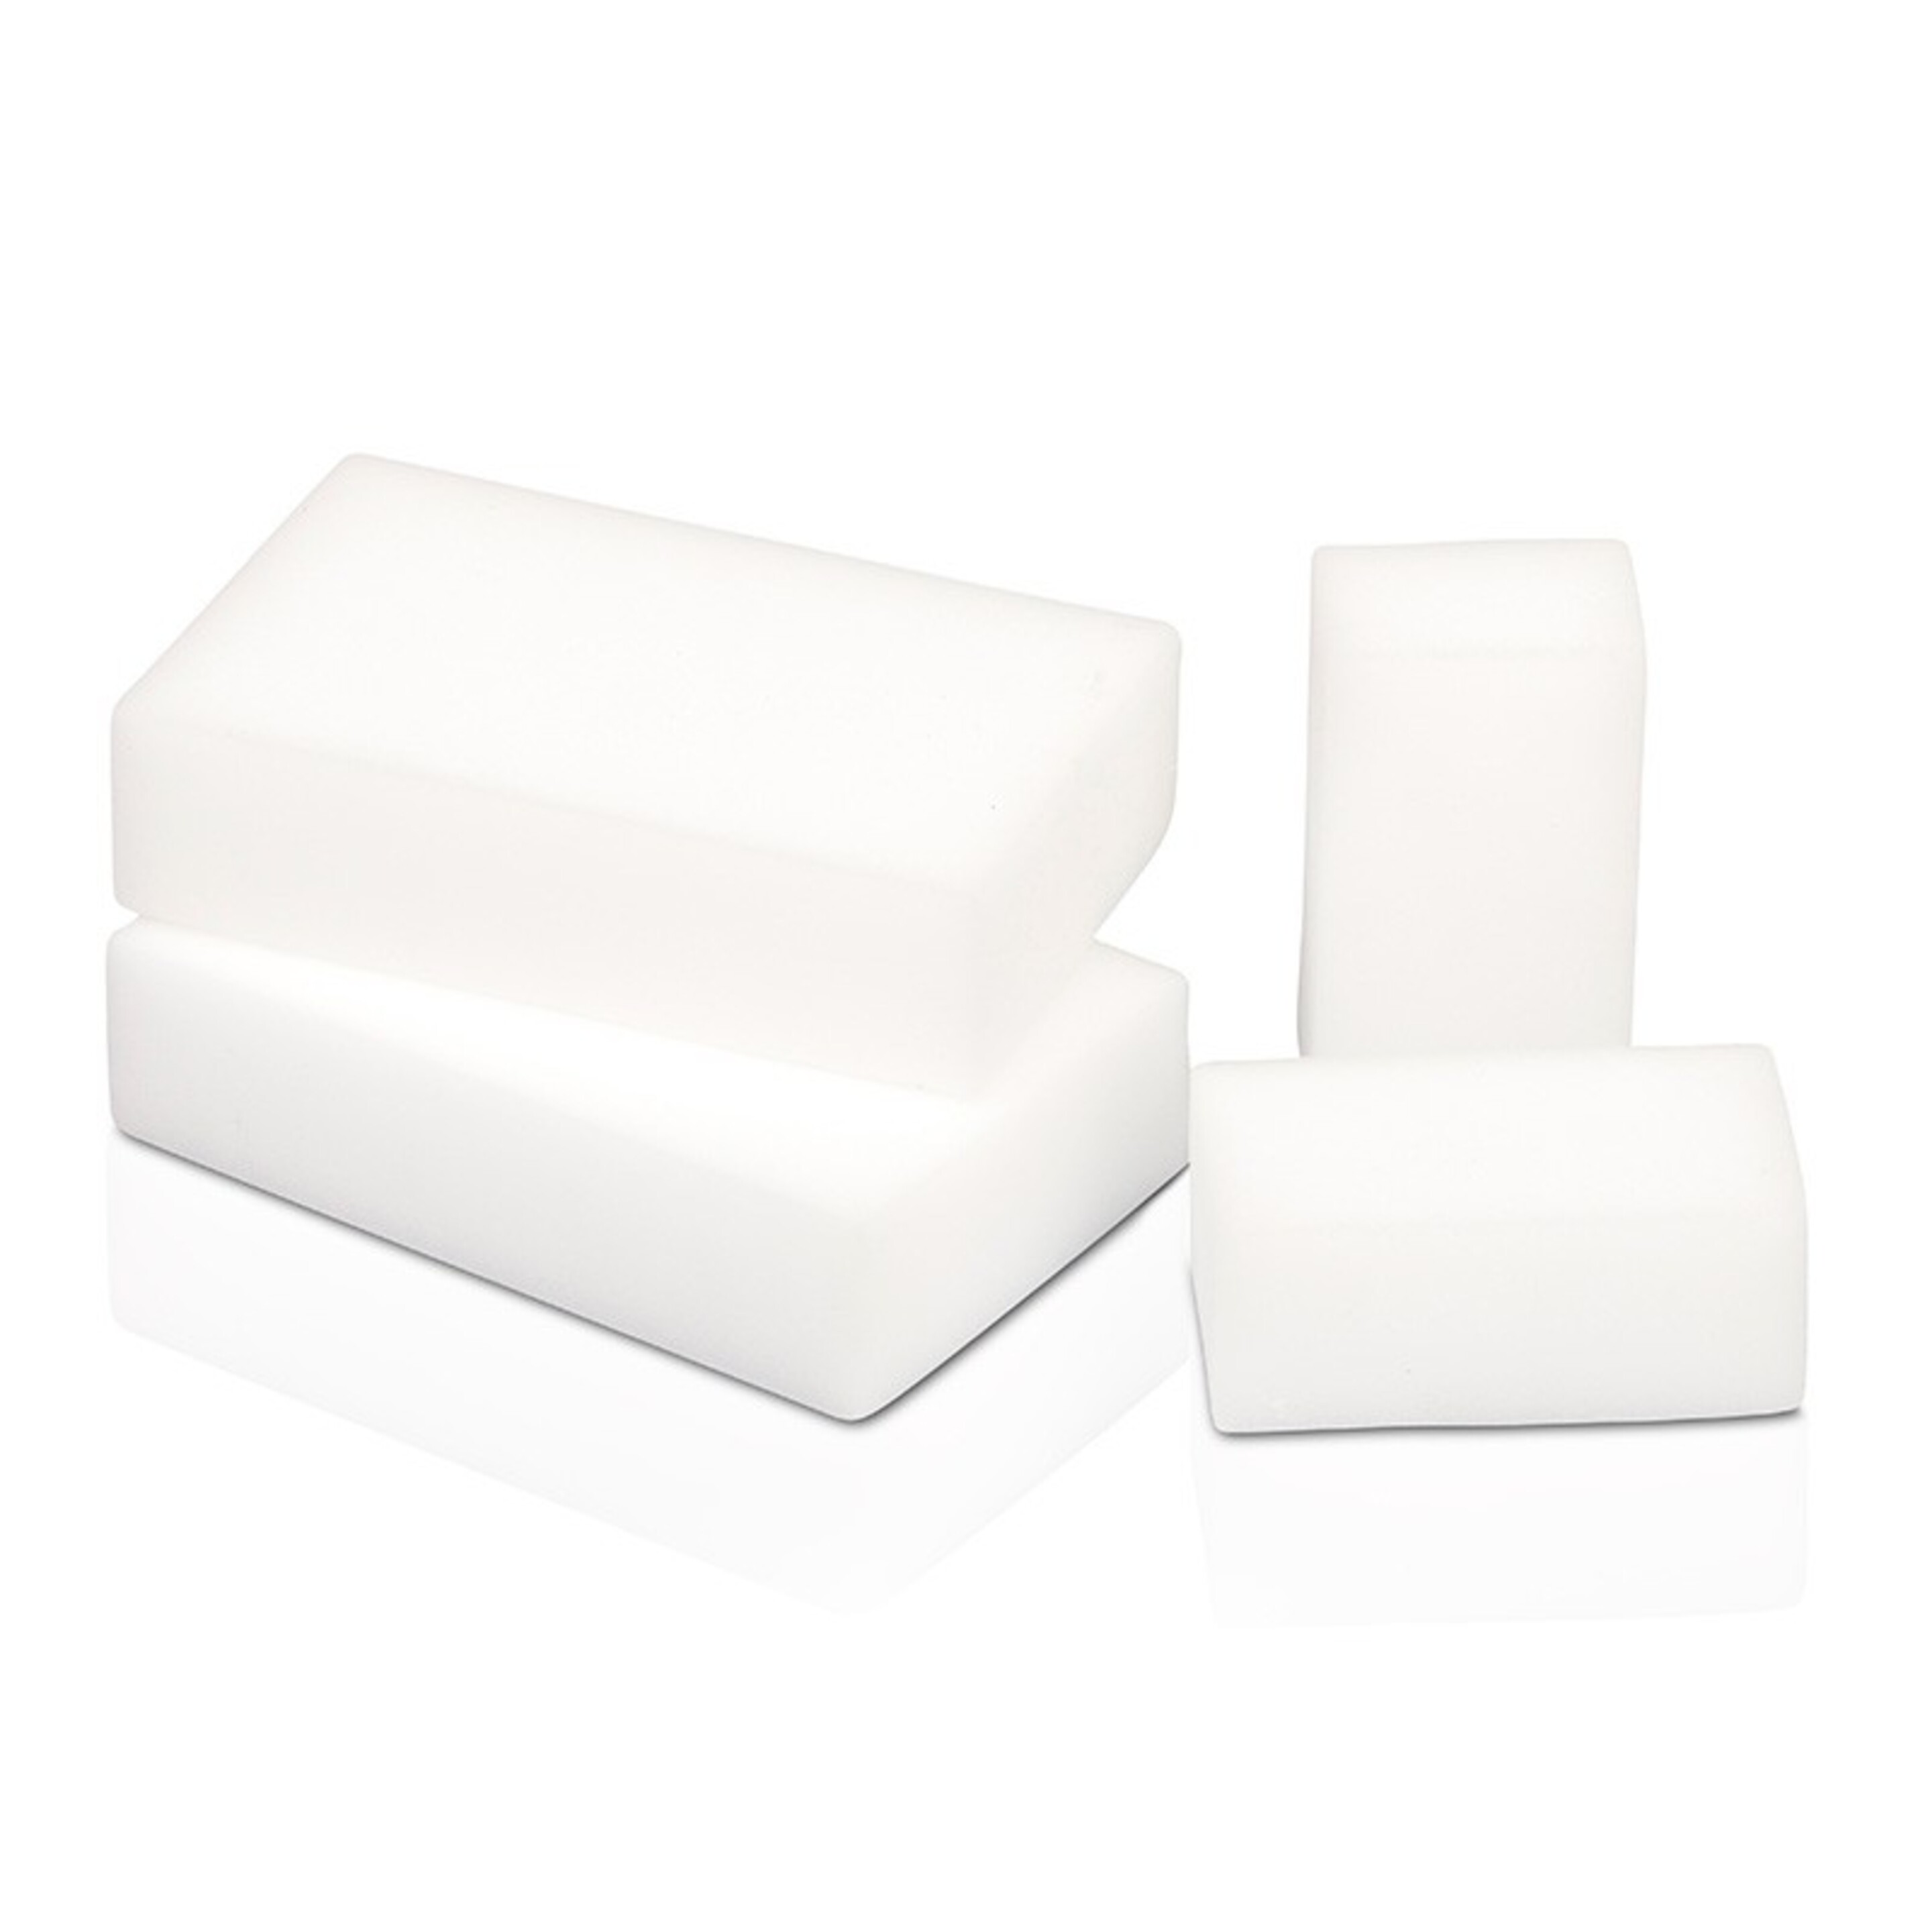 Otro Material De Limpieza - Blanco - Esponjas Mágicas 4 Uds.  MKP